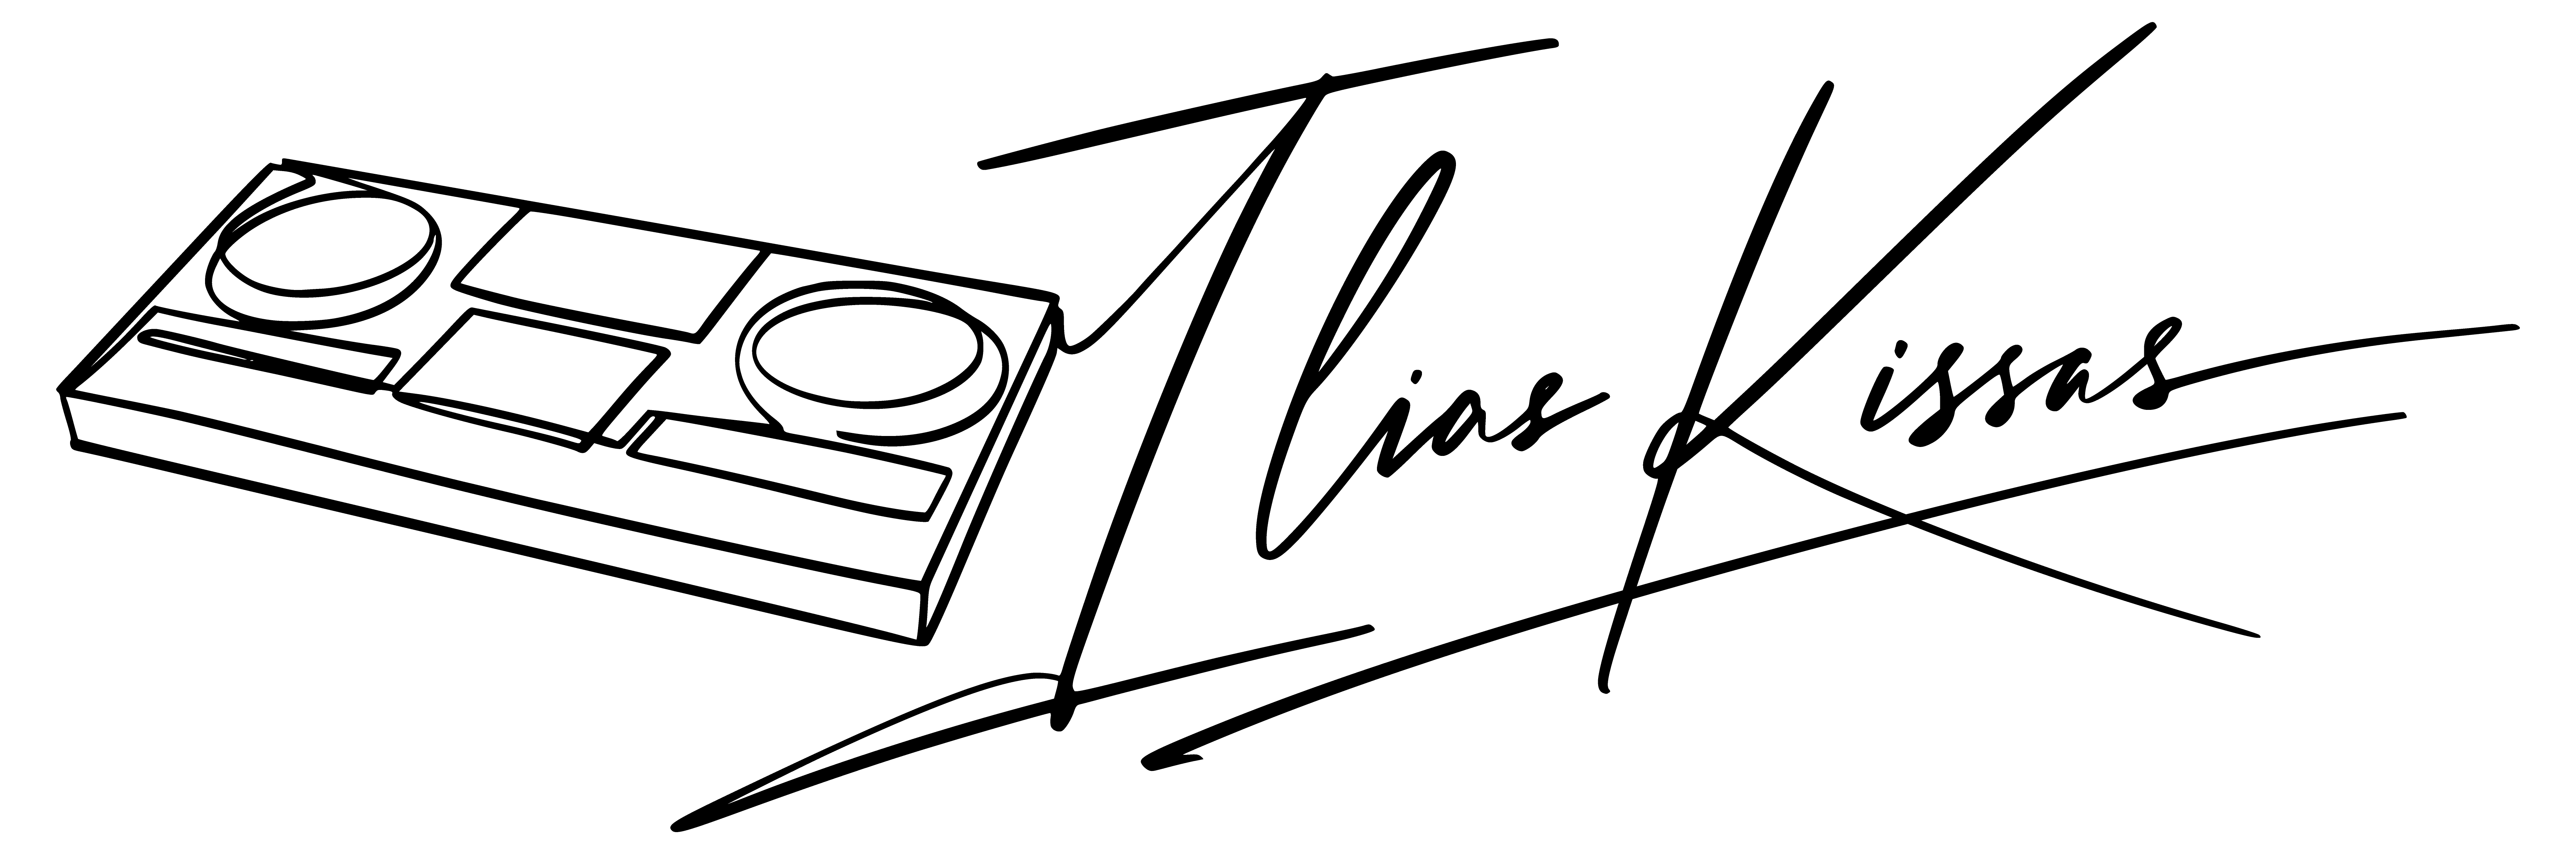 DJ Ilias Kissas Logo